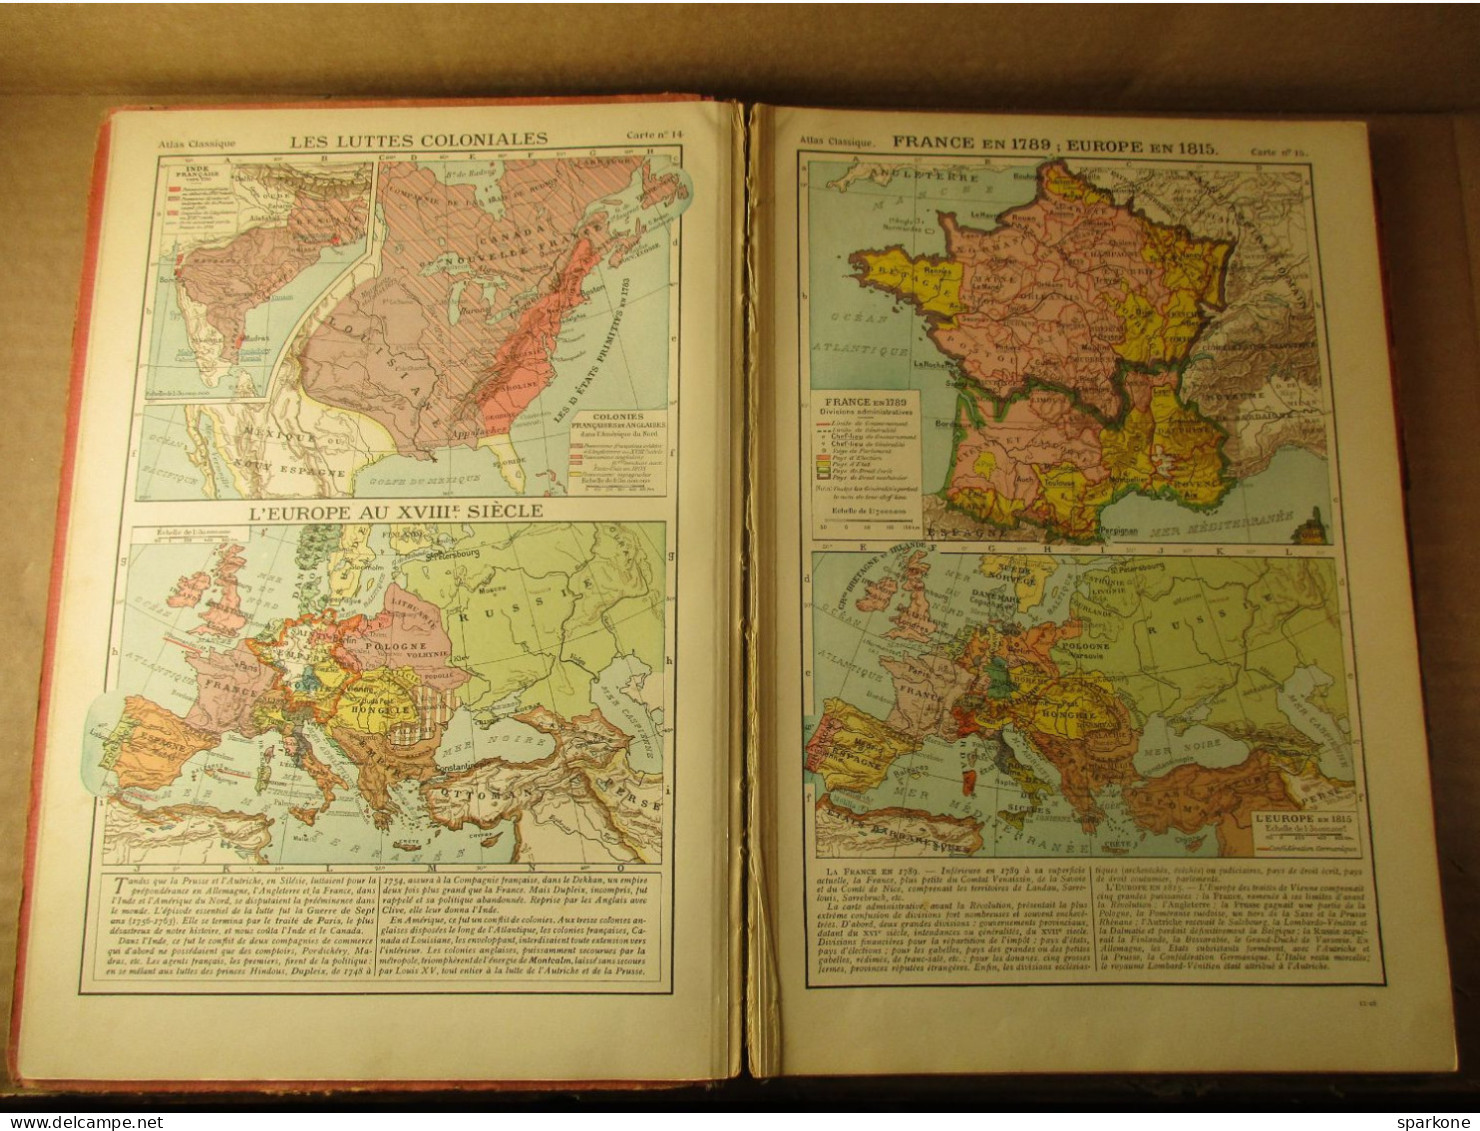 Atlas Classique De Géographie Ancienne Et Moderne (F. Schrader Et L. Gallouédec) éditions Hachette De 1928 - Maps/Atlas